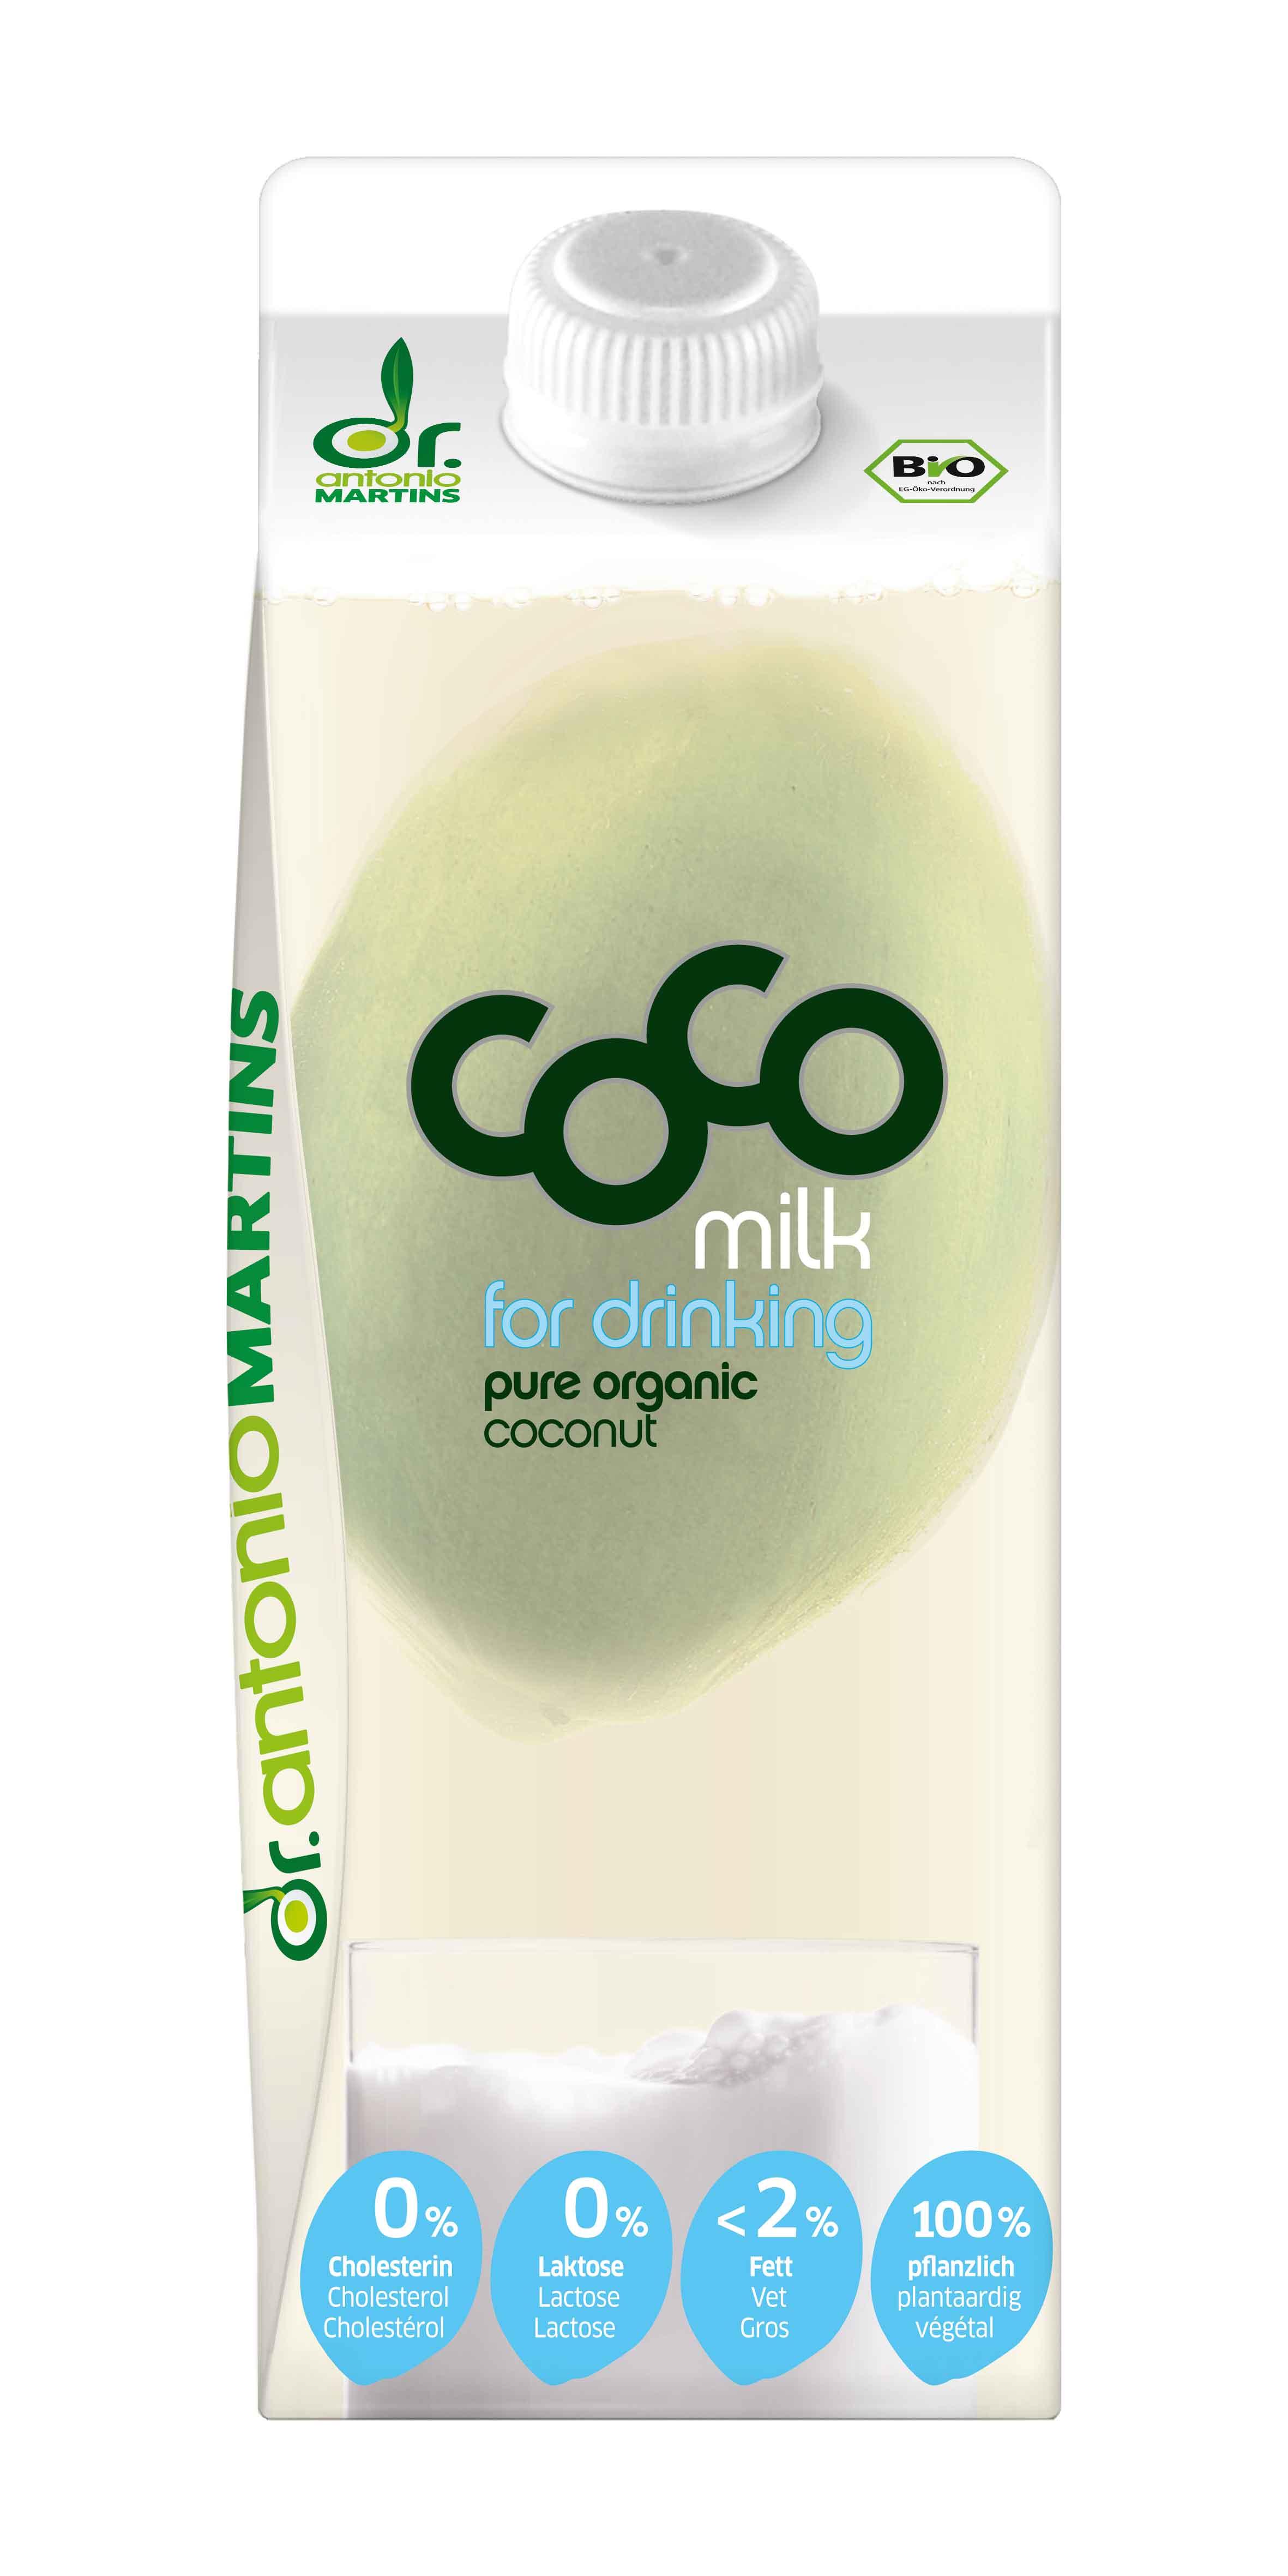 Mleko kokosowe do picia/ Coco Milk for drinking.